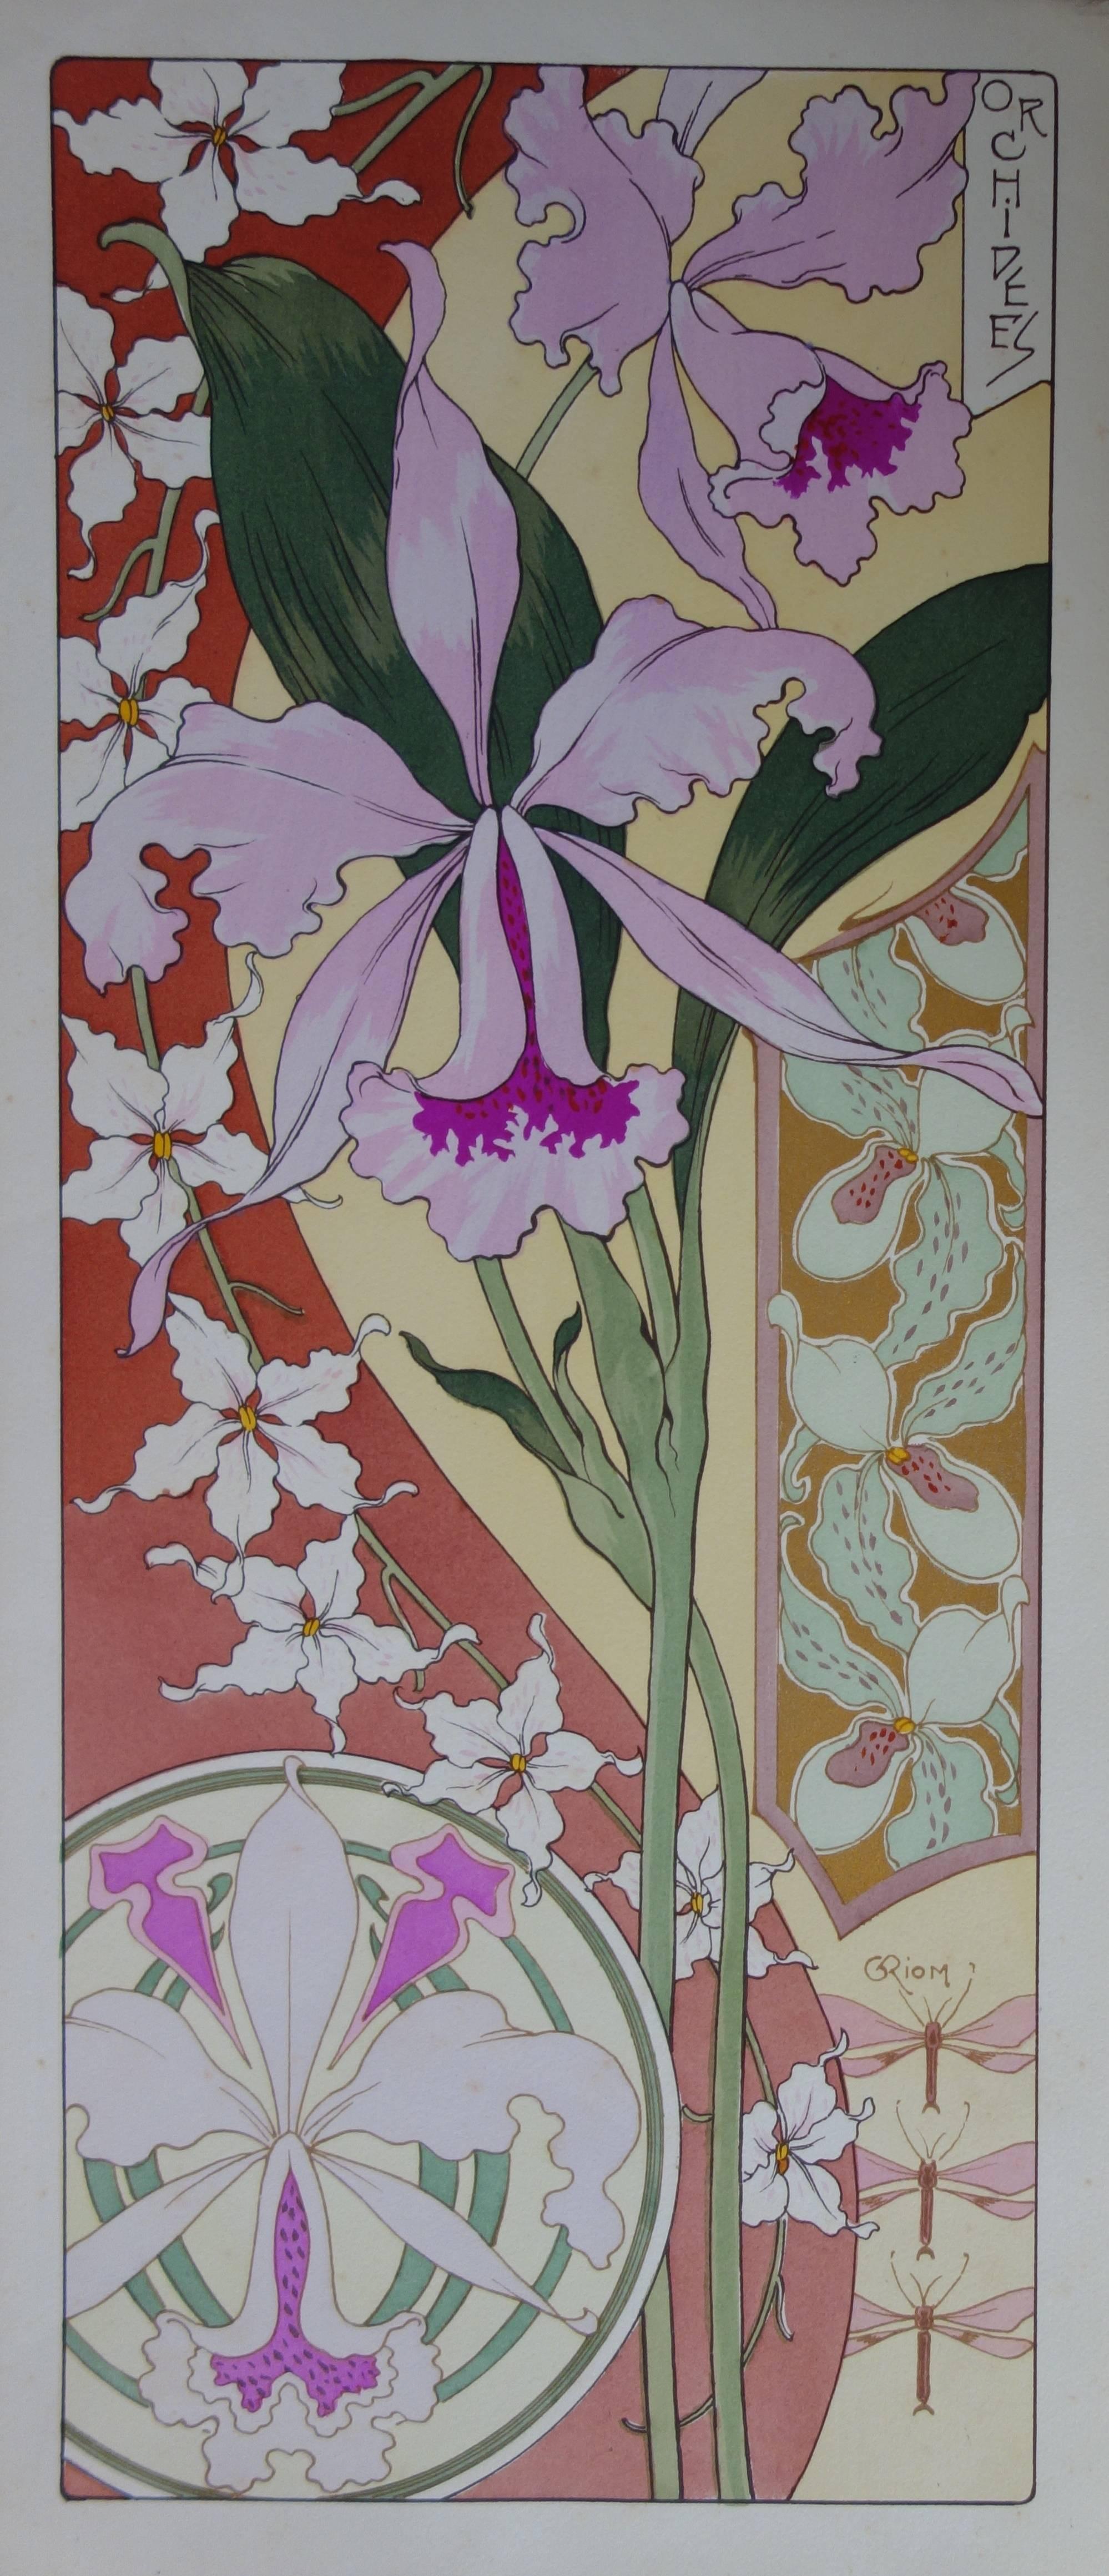 Unknown Still-Life Print - C RIOM : Orchids - Original Lithograph - Art Nouveau 1890s